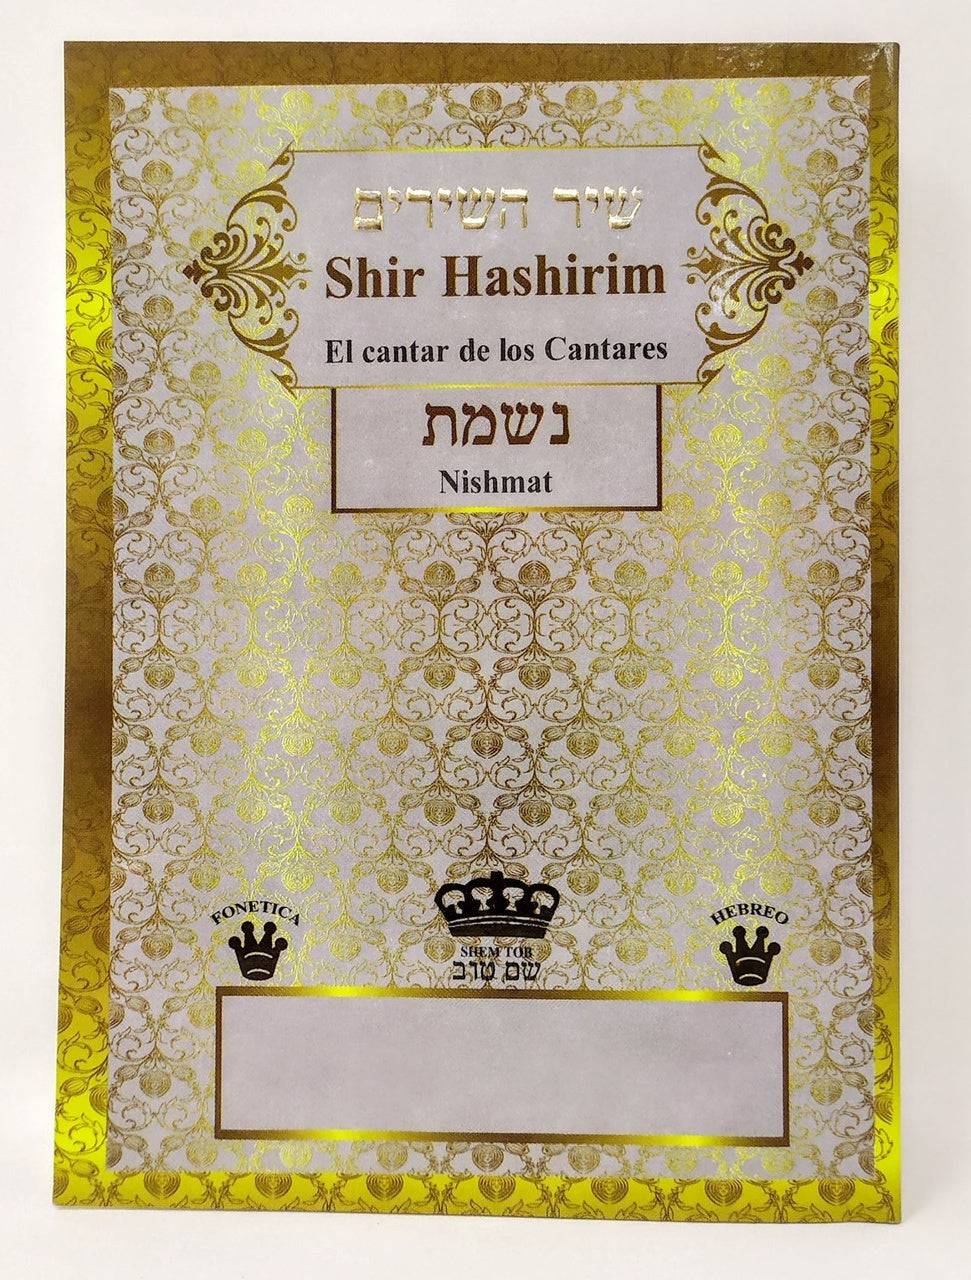 Shir Hashirim Shem tob el Cantar de los Cantares - Libreria Jerusalem Centro